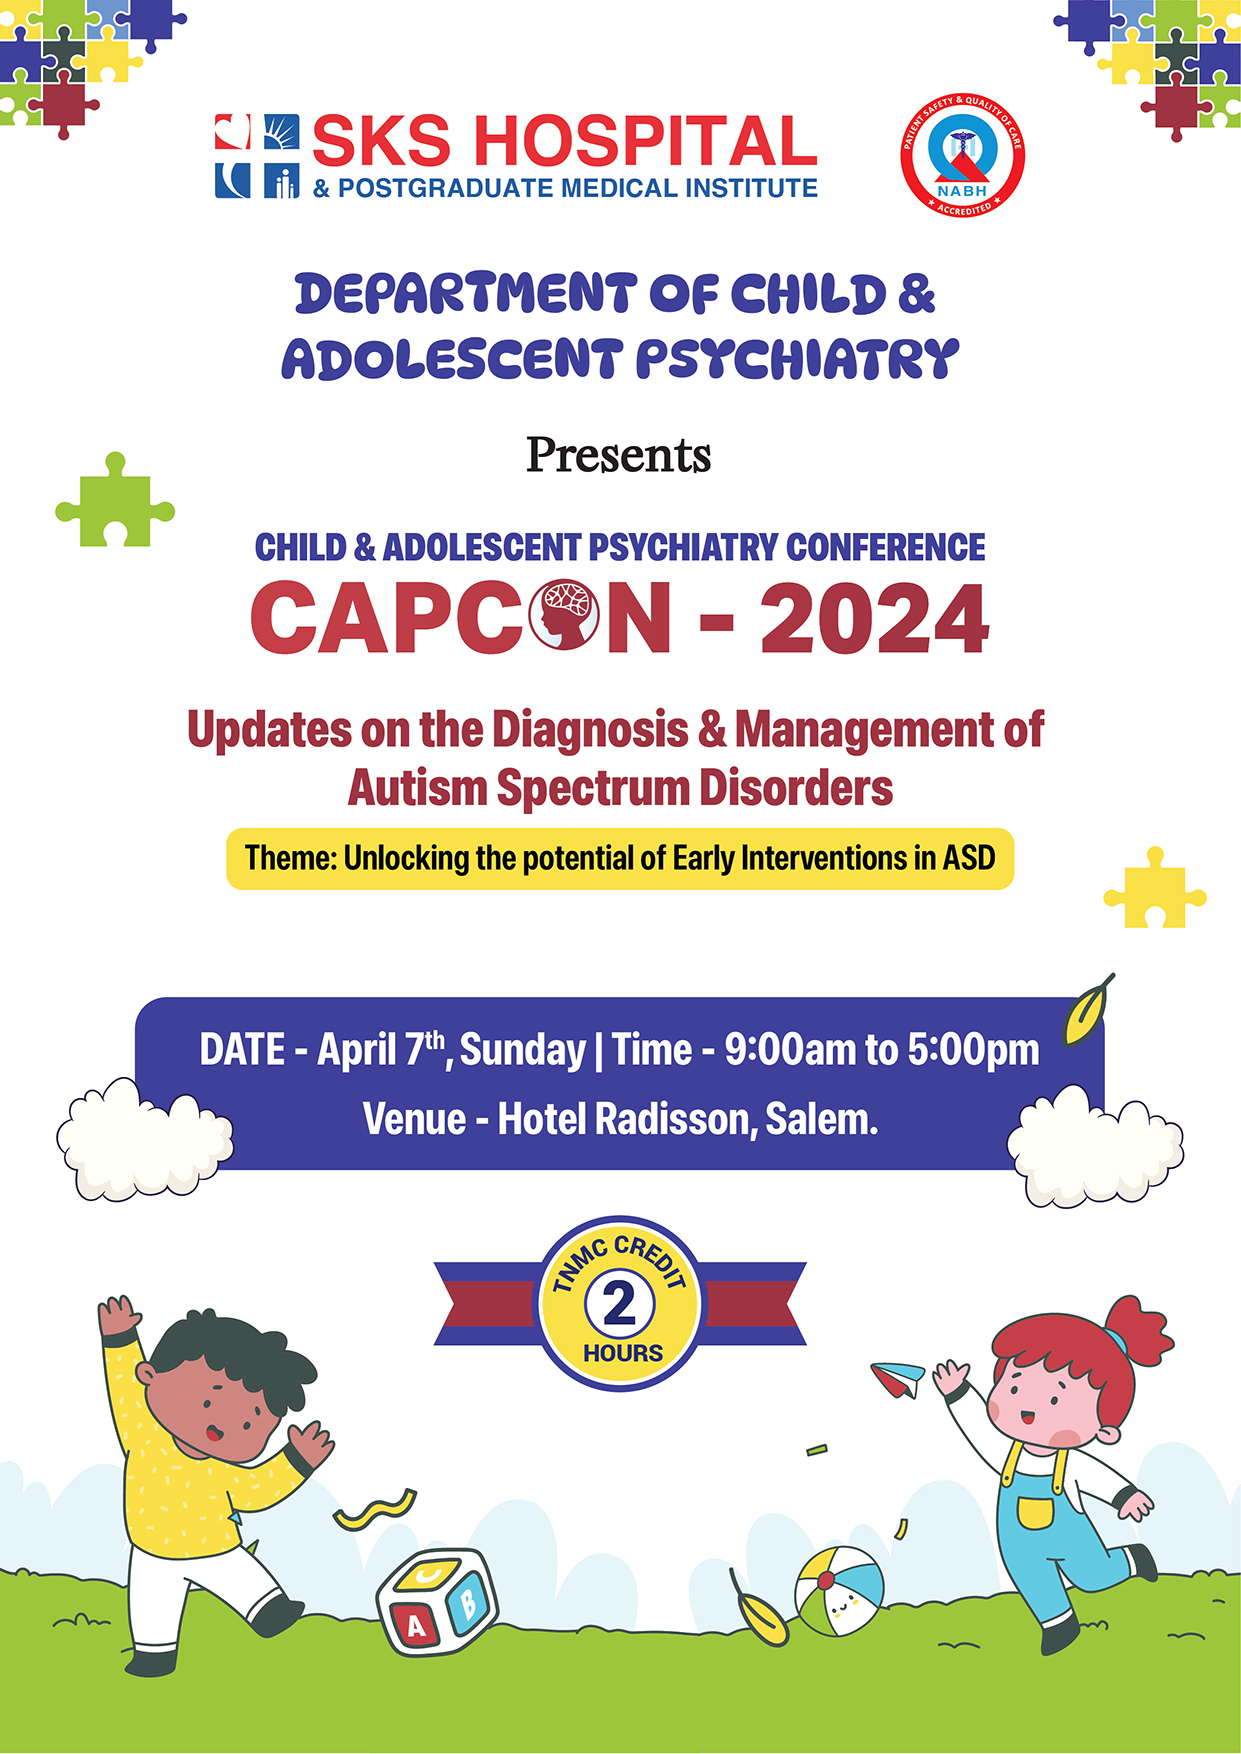 CHILD & ADOLESCENT PSYCHIATRY CONFERENCE - CAPCON 2024